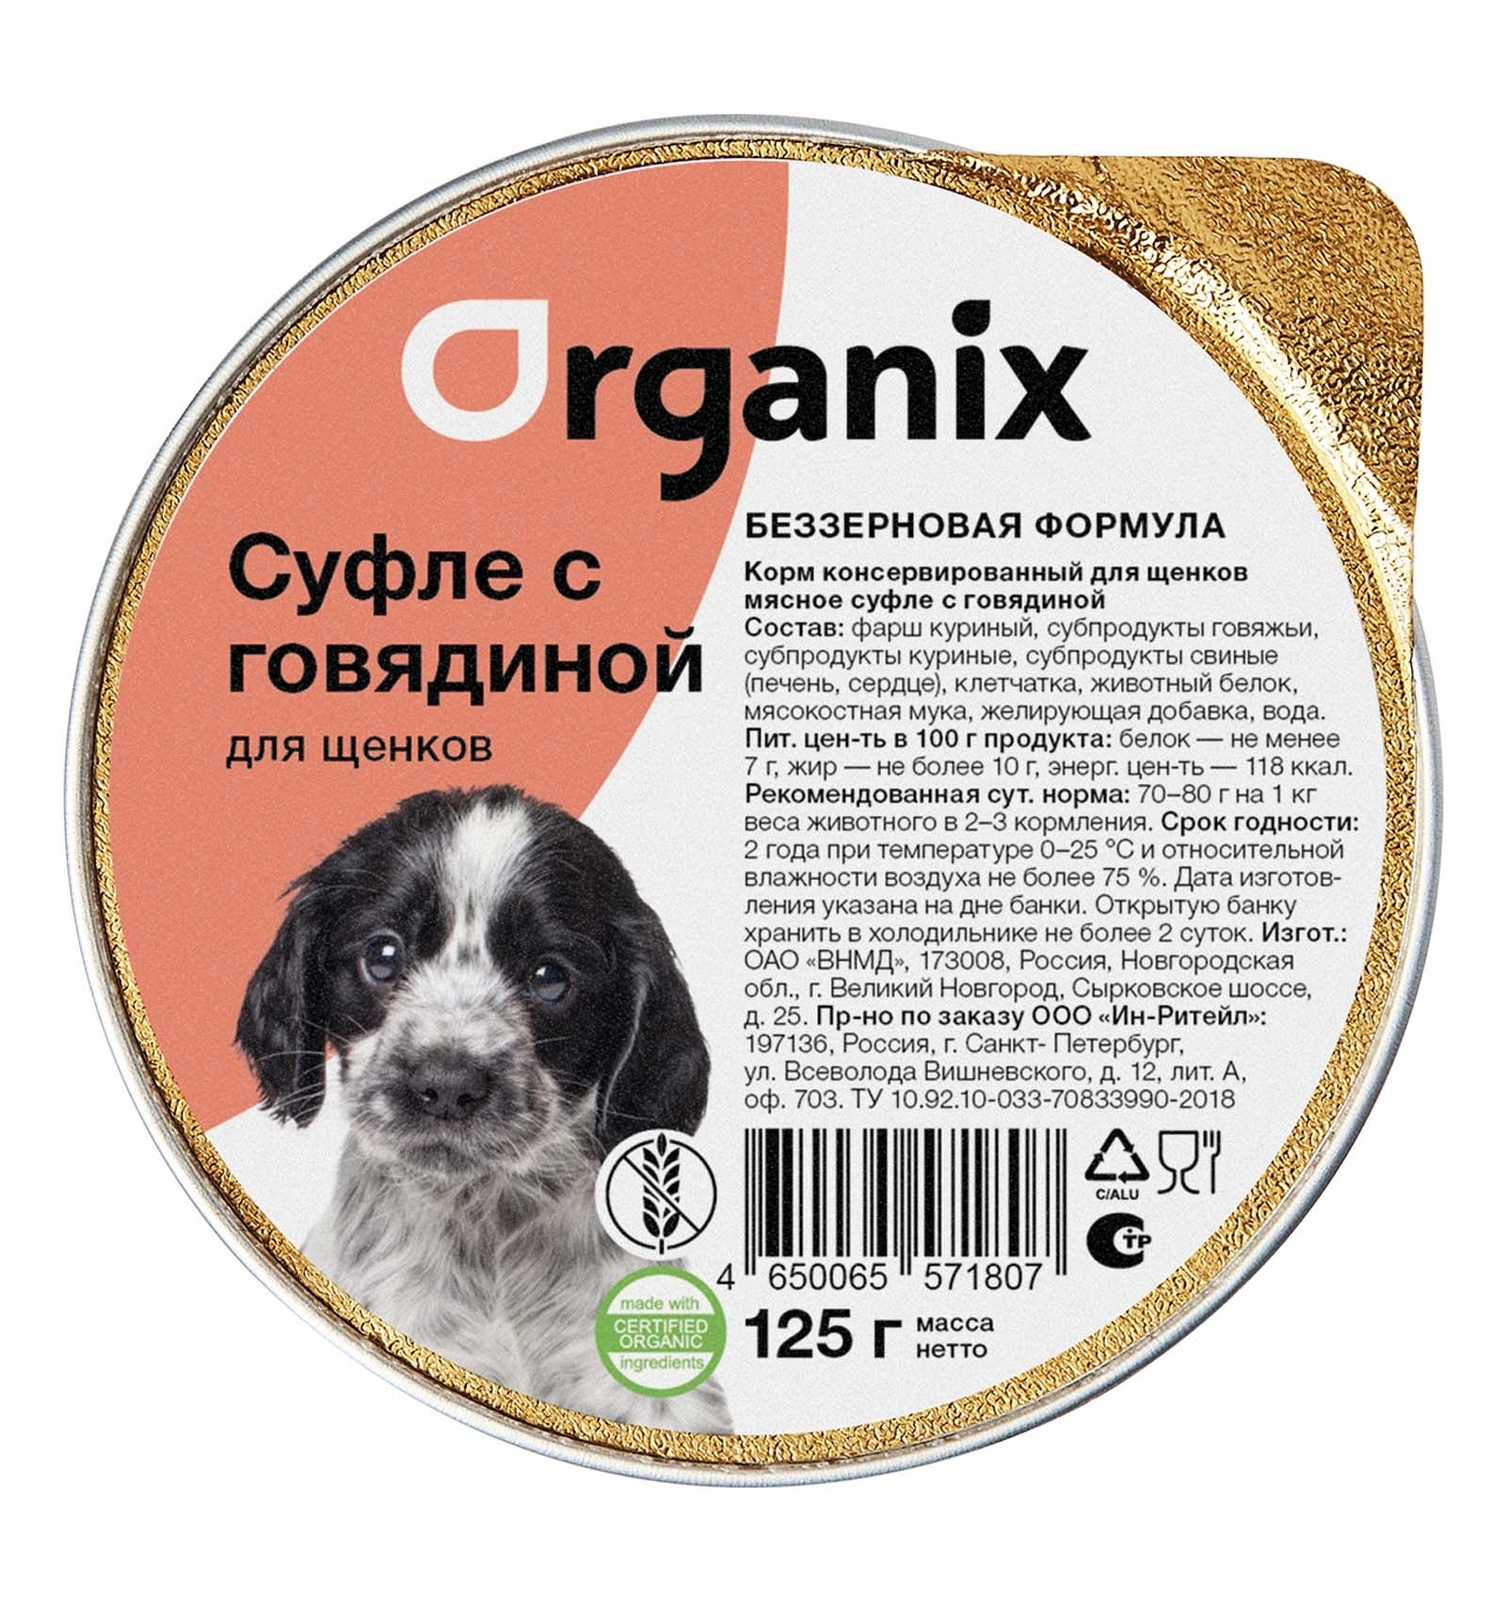 Organix консервы Organix мясное суфле с говядиной для щенков (125 г)